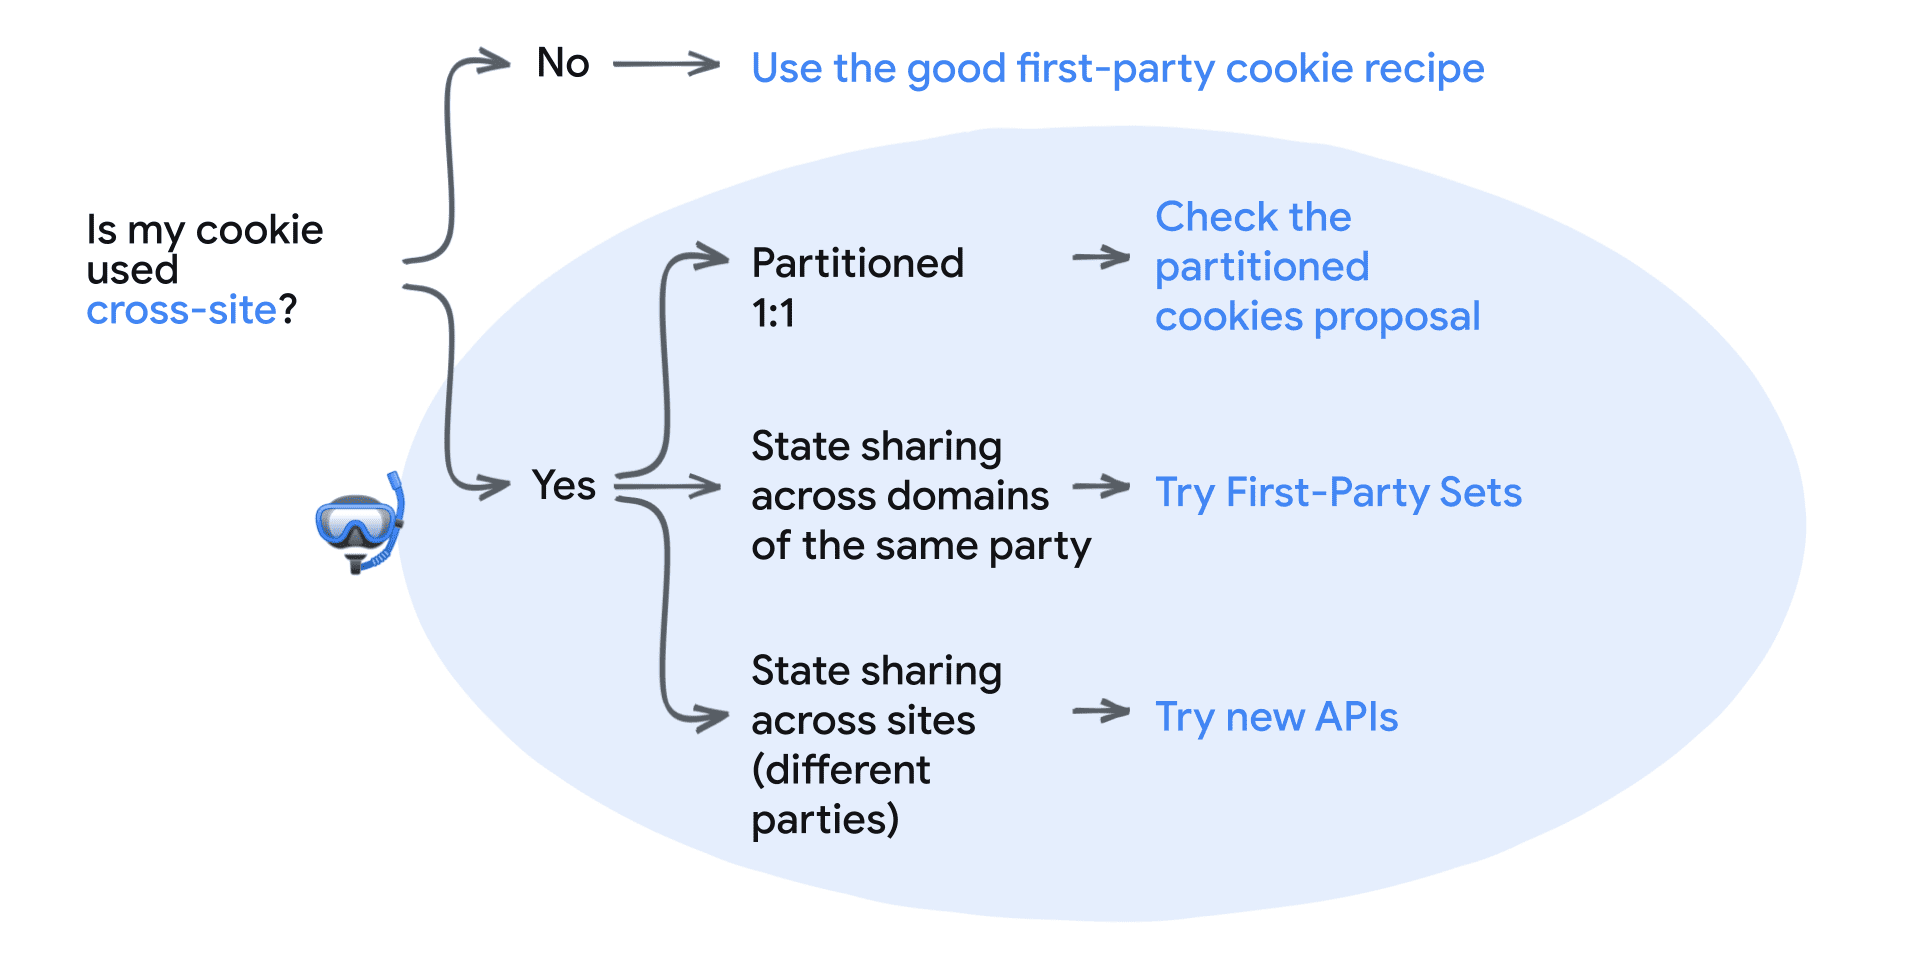 آیا کوکی من از طریق سایت استفاده می شود؟ نه: از دستور پخت کوکی های شخص اول استفاده کنید. بله: تقسیم‌بندی شده 1:1 - پیشنهاد CHIPS را بررسی کنید، اشتراک‌گذاری حالت در دامنه‌های همان طرف - از مجموعه‌های شخص اول استفاده کنید، اشتراک‌گذاری وضعیت در بین سایت‌ها (احزاب مختلف) - APIهای جدید را امتحان کنید